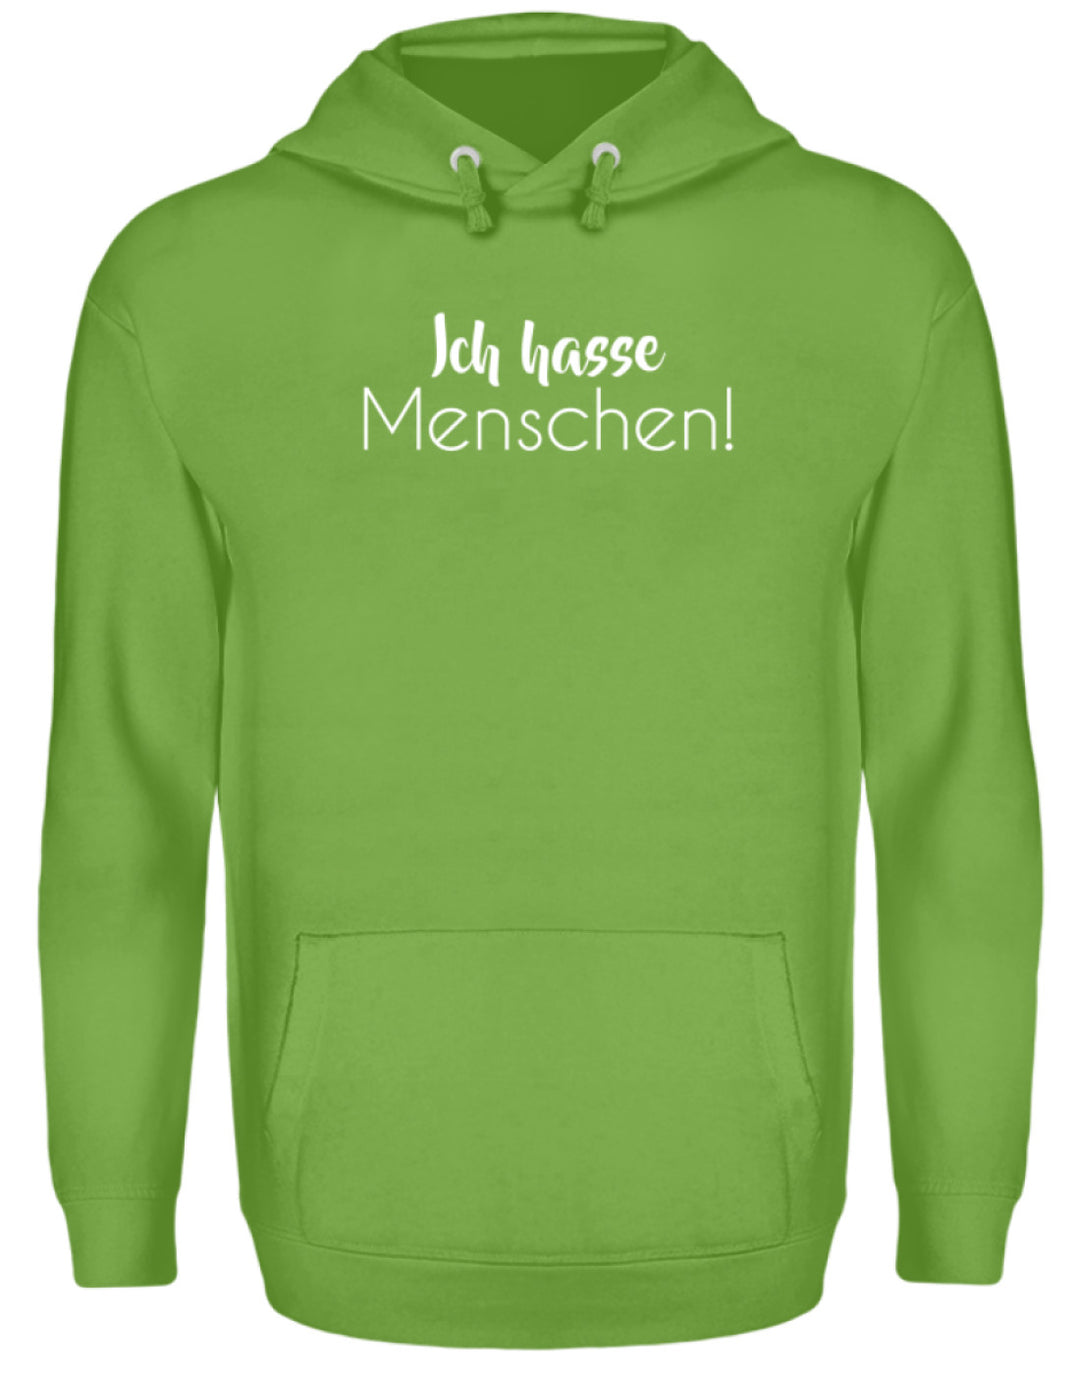 Ich hasse Menschen - Girls only  - Unisex Kapuzenpullover Hoodie - Words on Shirts